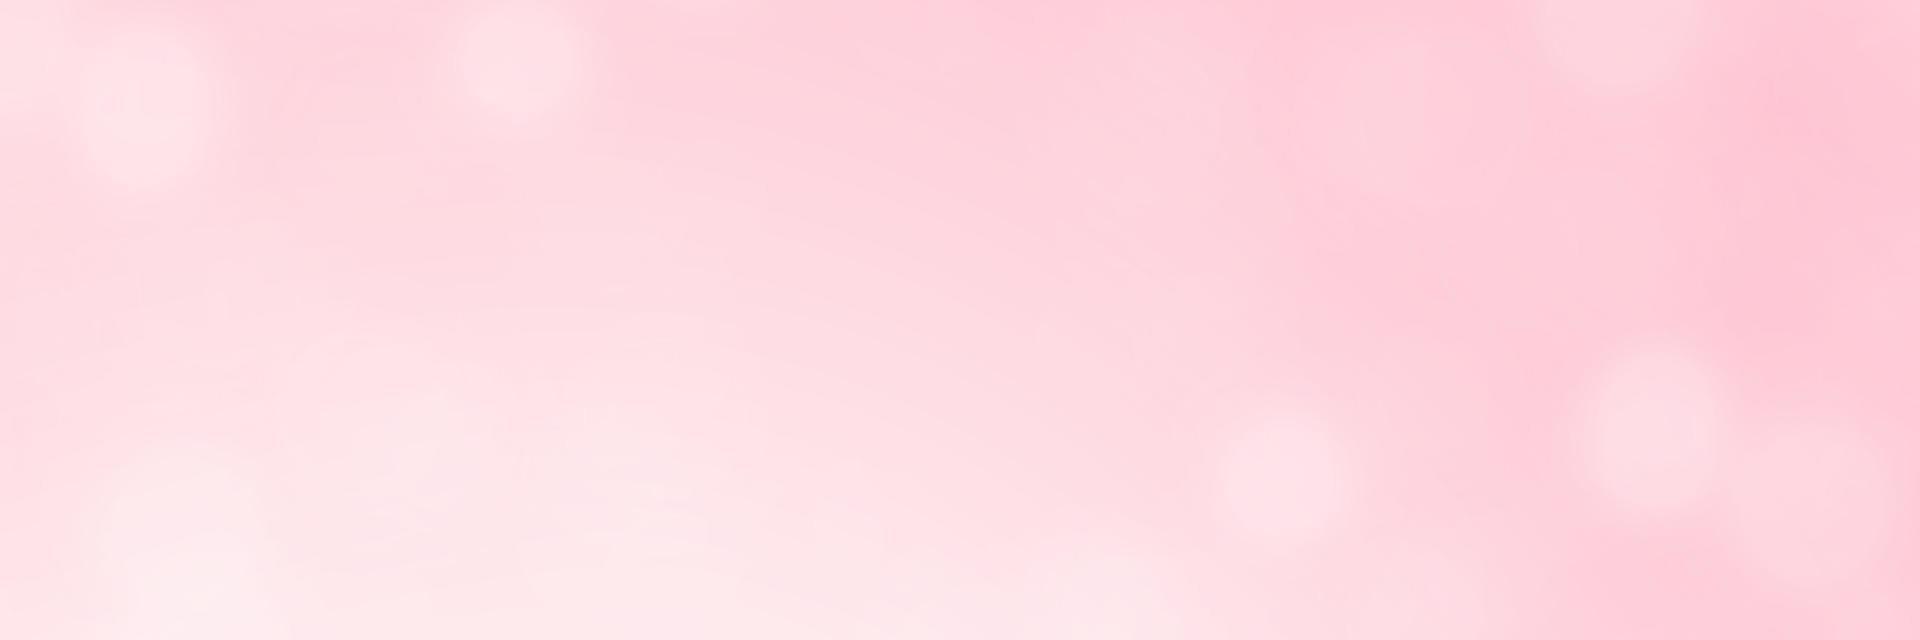 bannière fond rose avec bokeh. illustration vectorielle vecteur